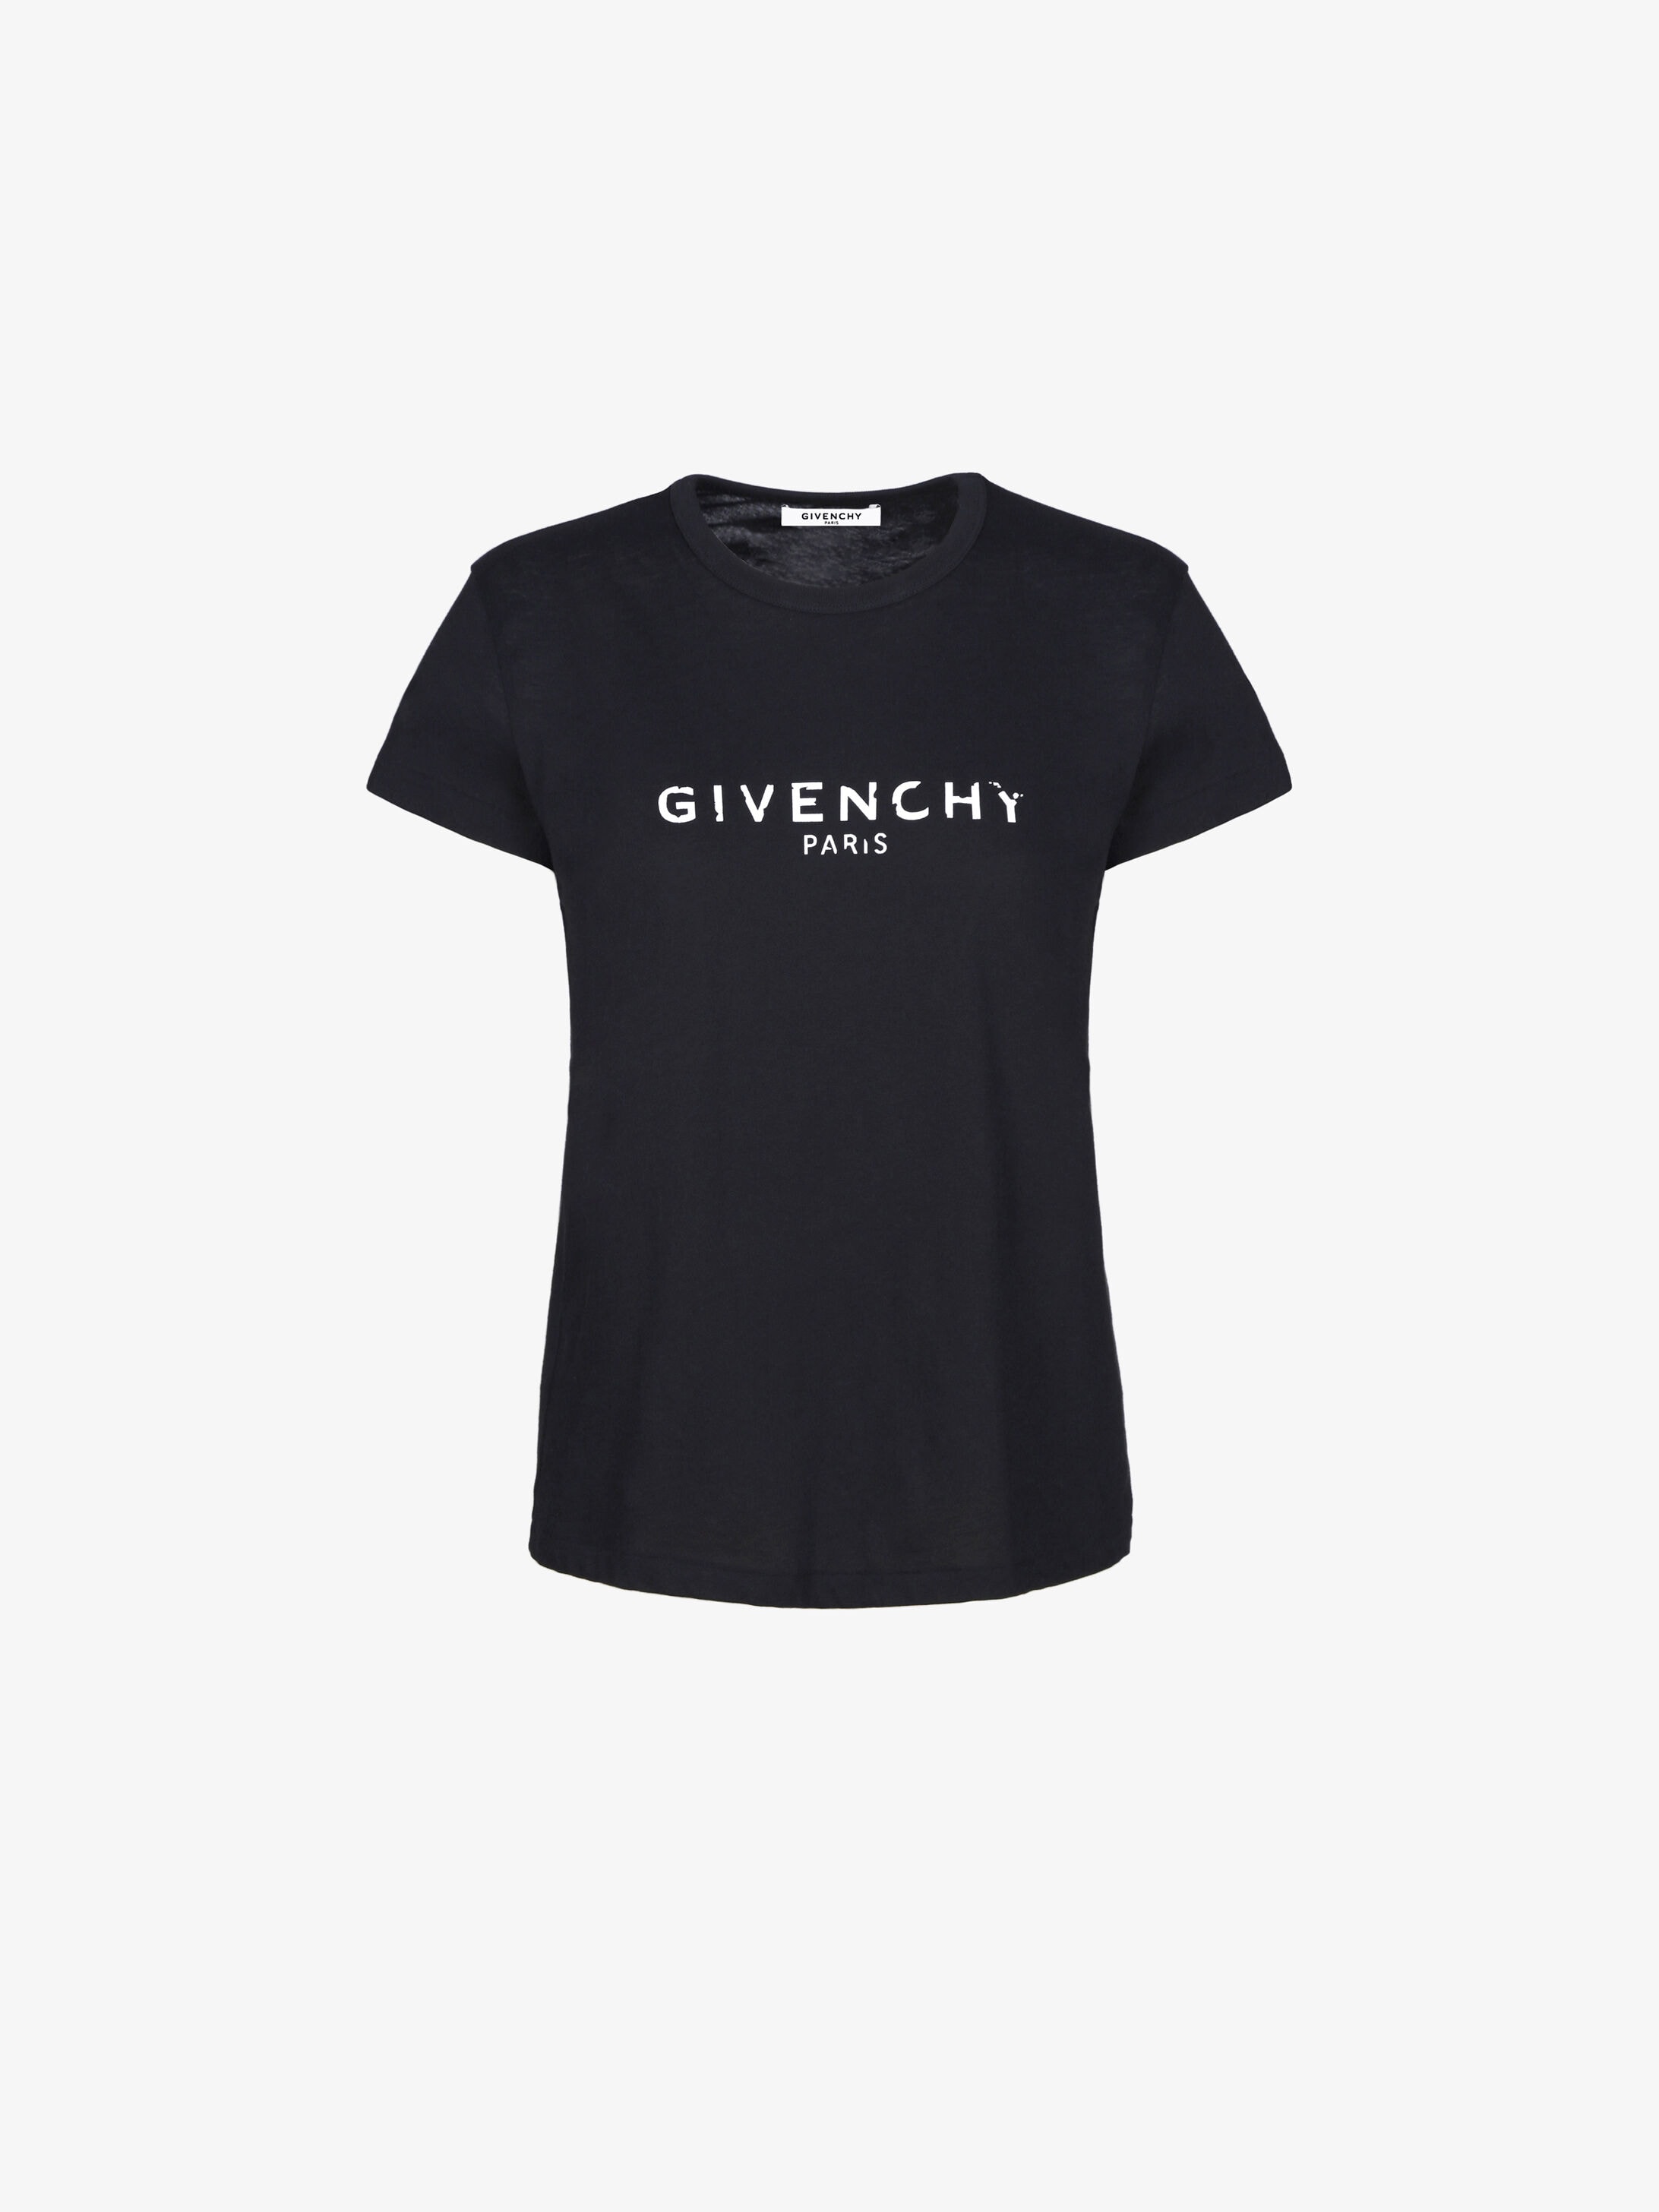 givenchy shirt womens